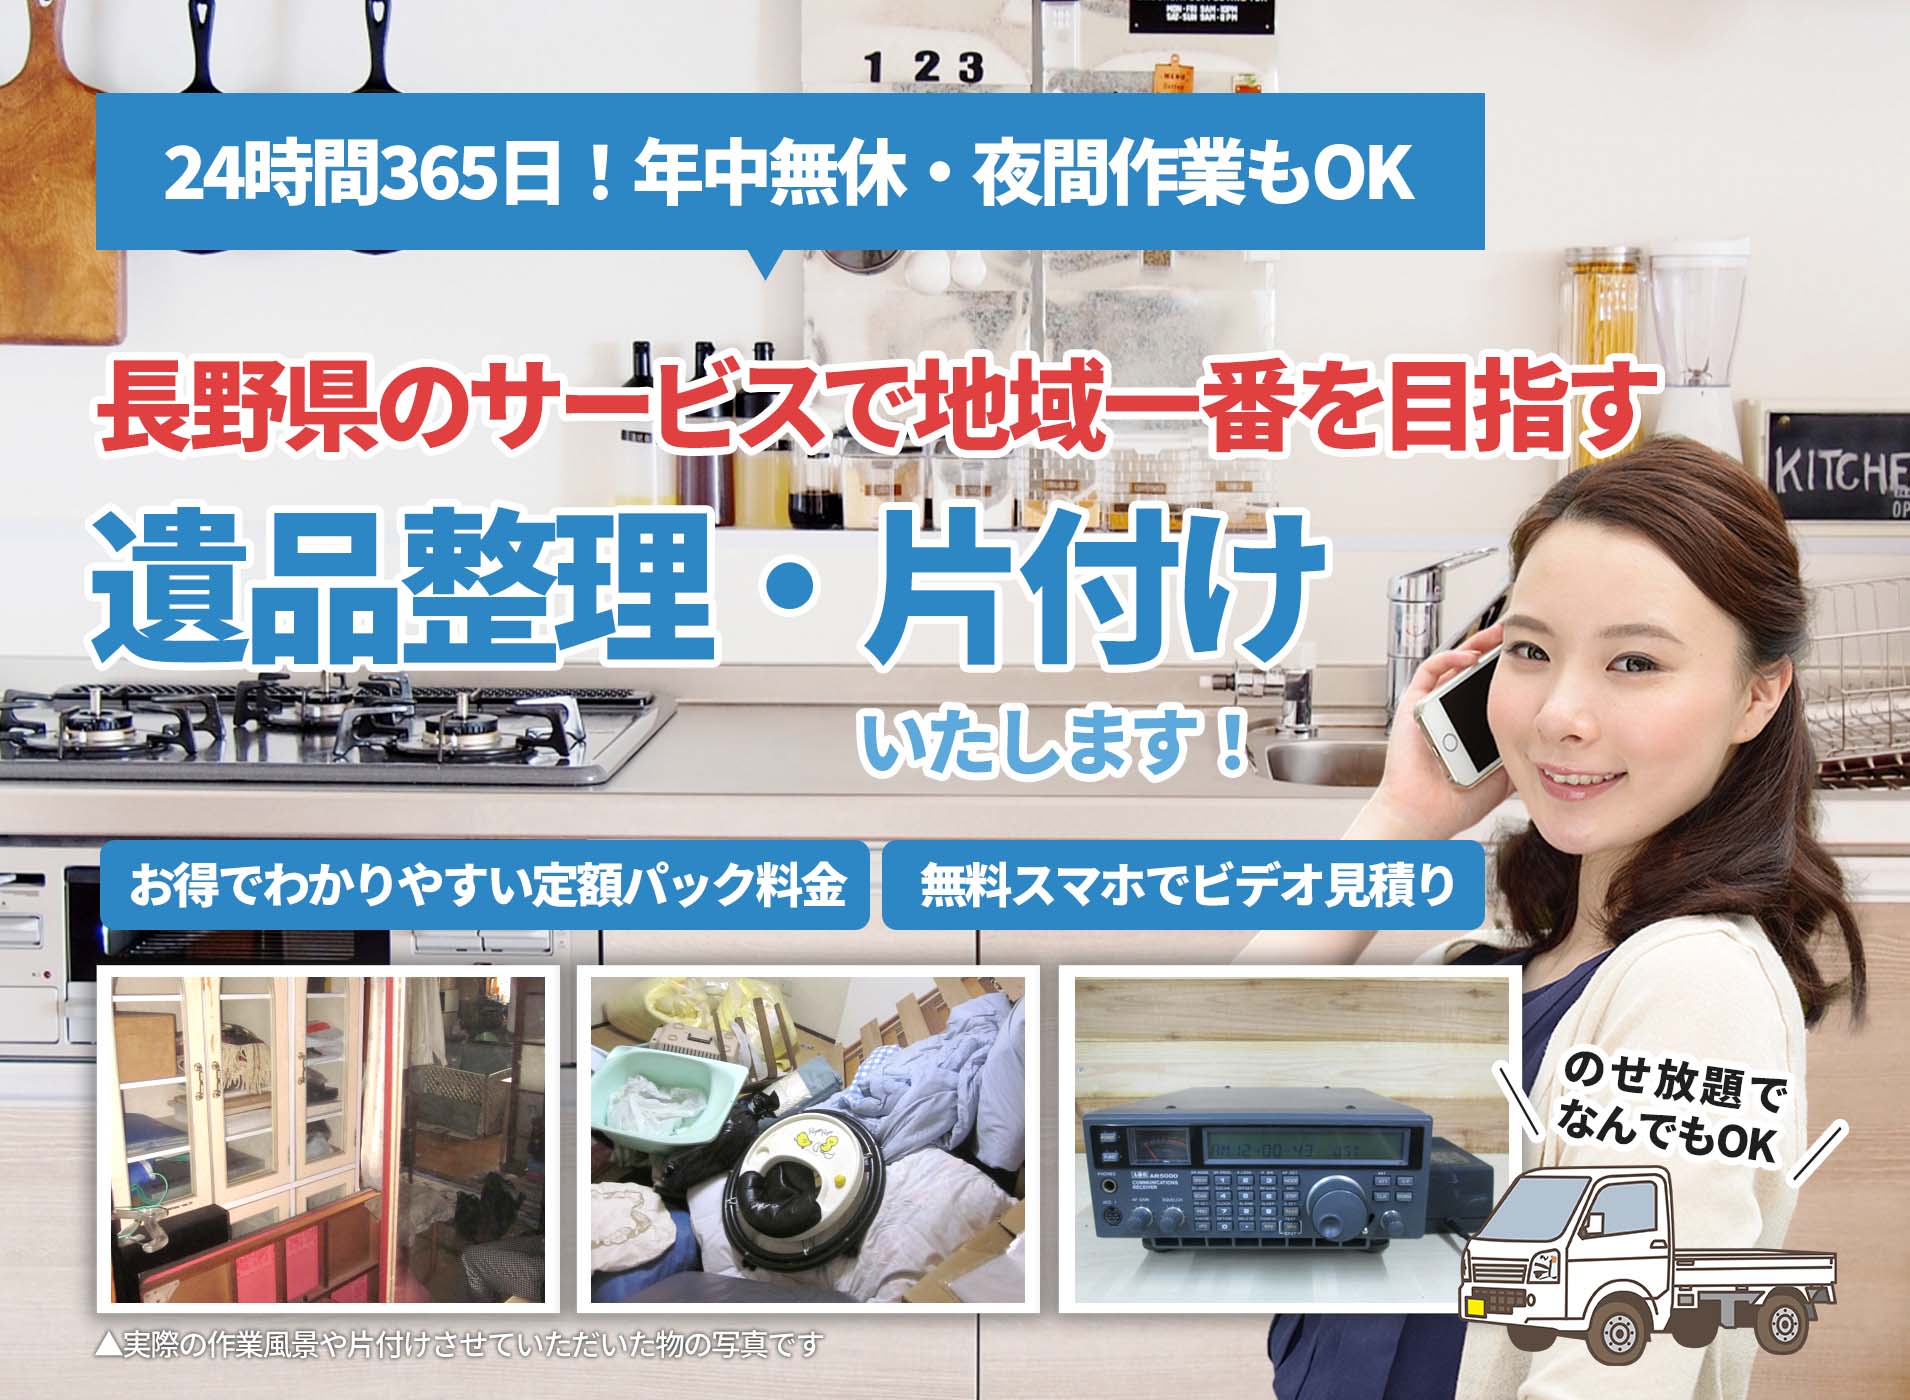 長野県のサービスで地域一番を目指すＬＴＪ遺品整理隊の遺品整理サービス